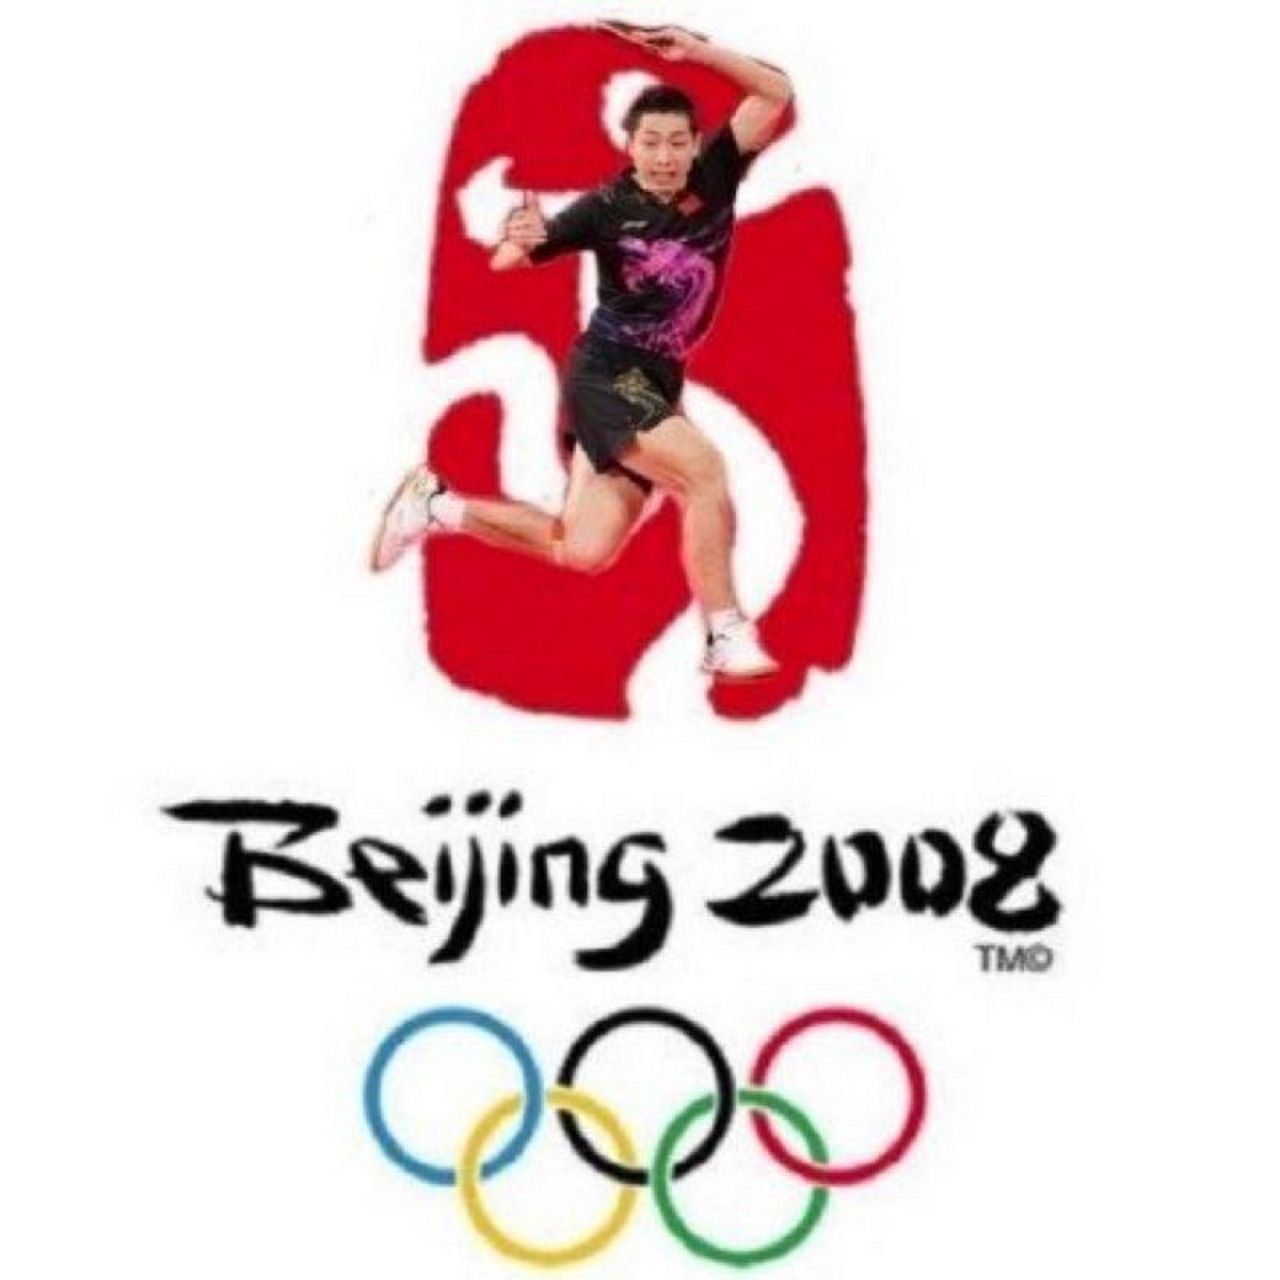 许昕像极了北京奥运会会徽是队内搞笑担当,也是北京奥运会会徽担当!